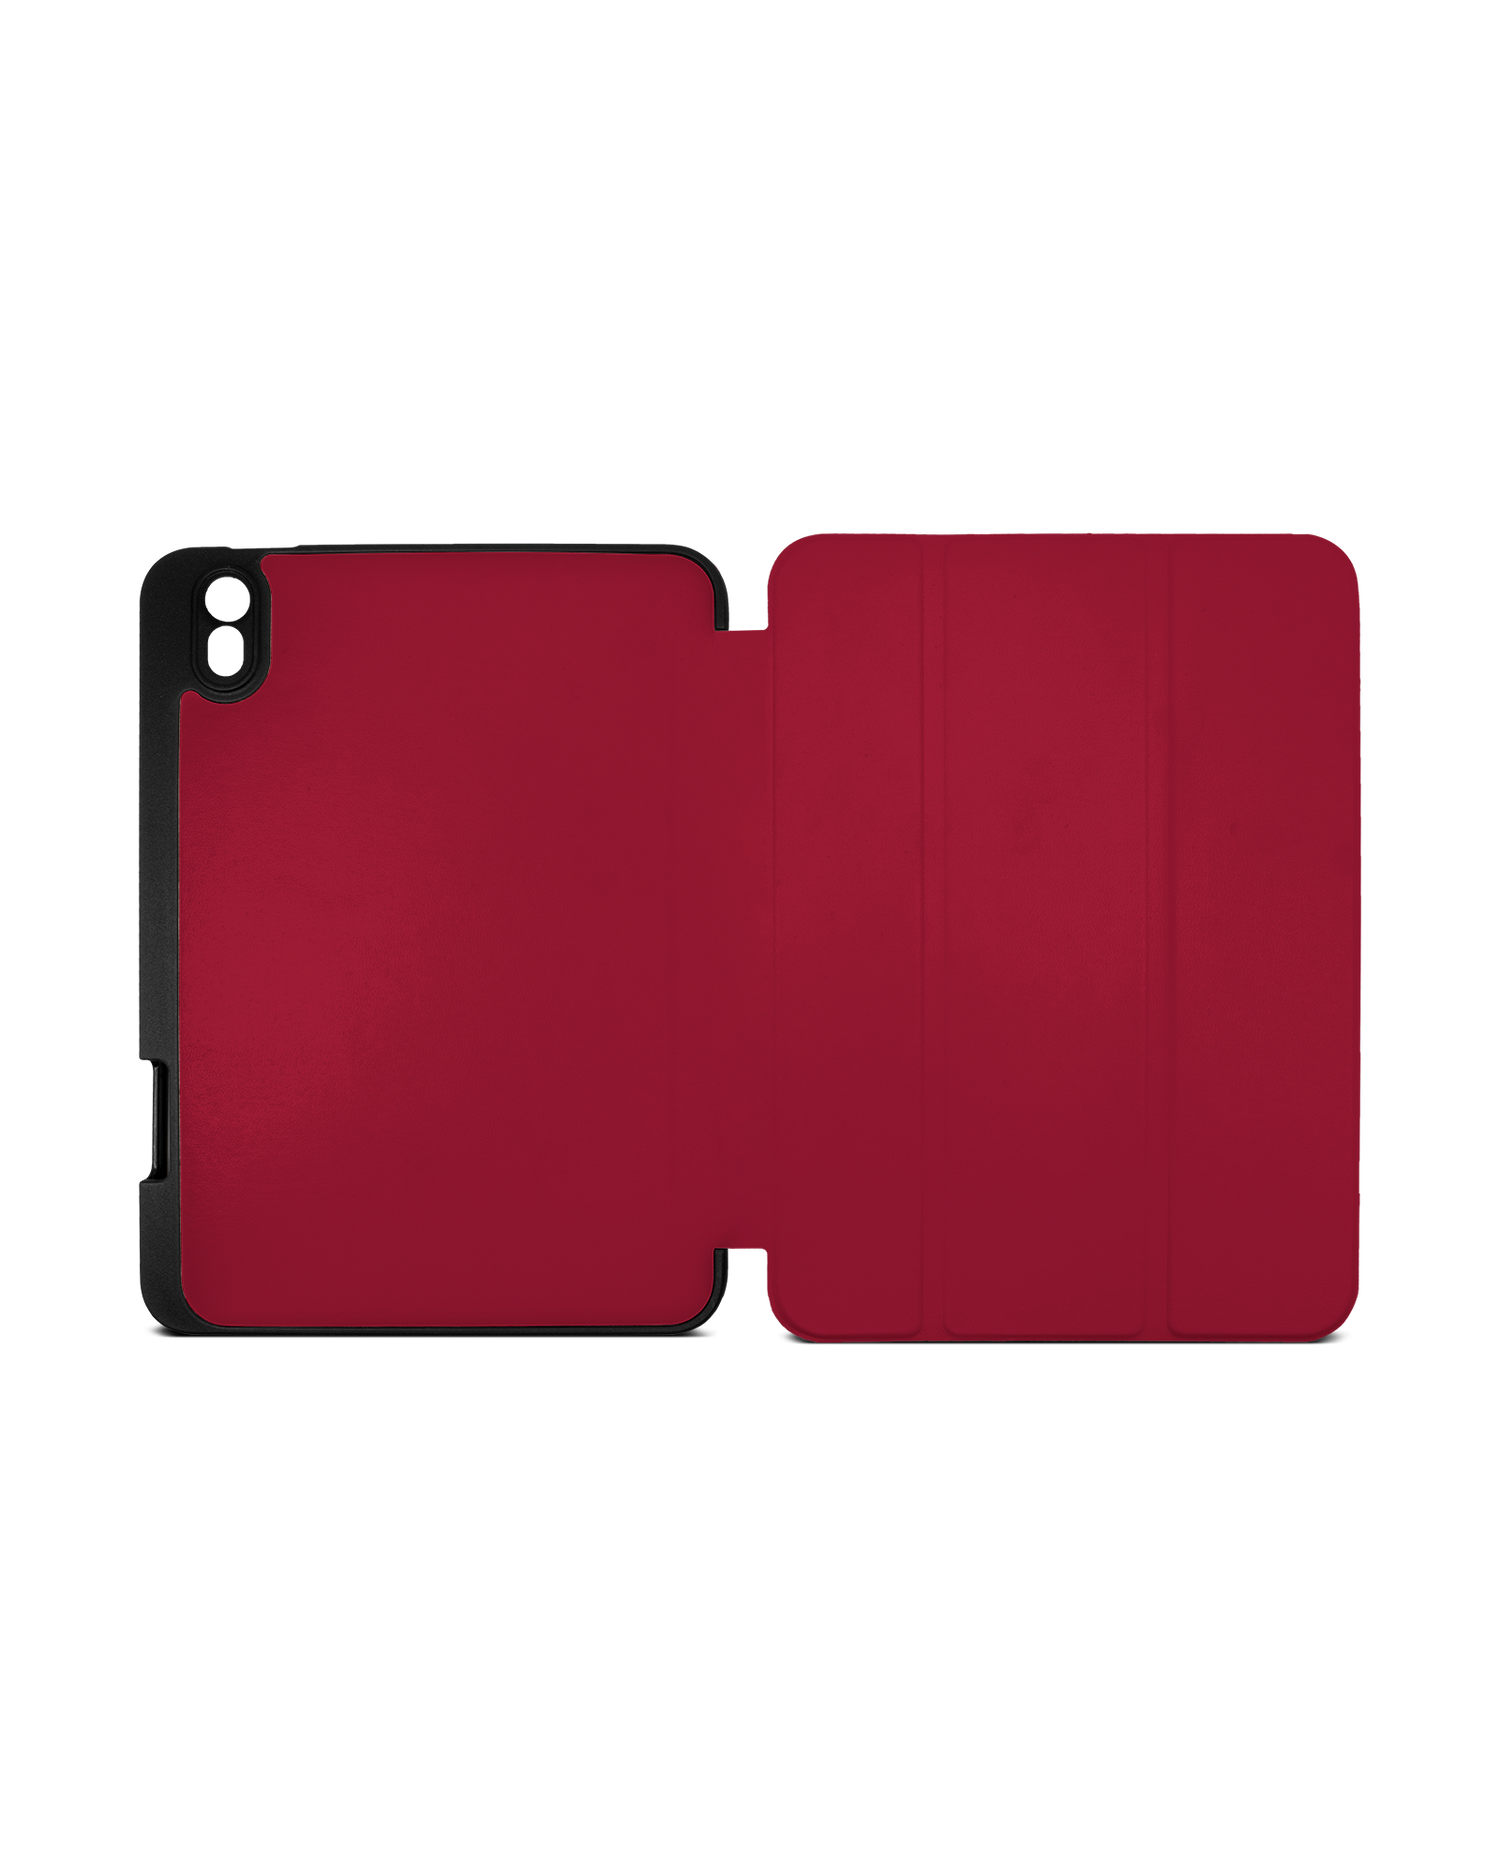 RED iPad Hülle mit Stifthalter Apple iPad mini 6 (2021): Geöffnet Außenansicht